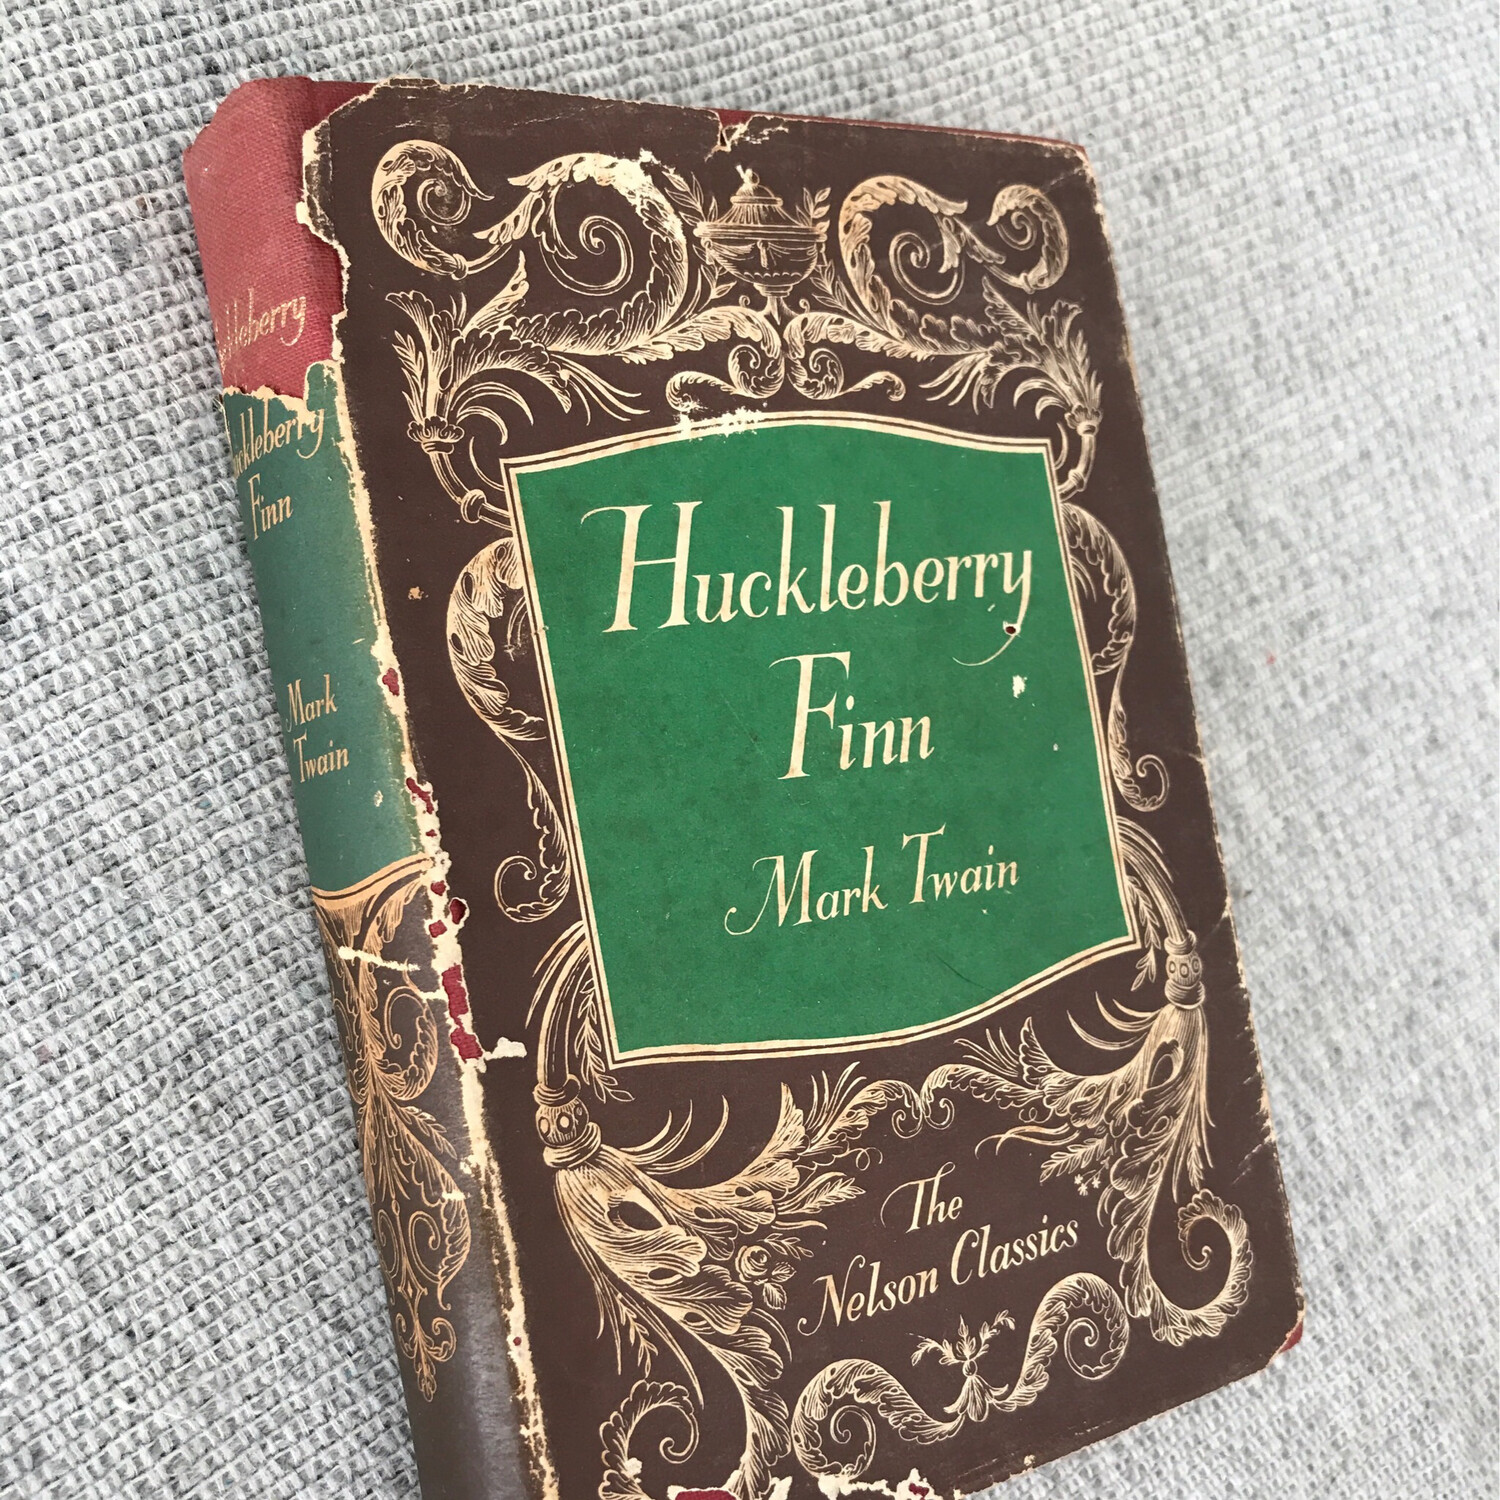 Huckleberry Finn, Mark Twain